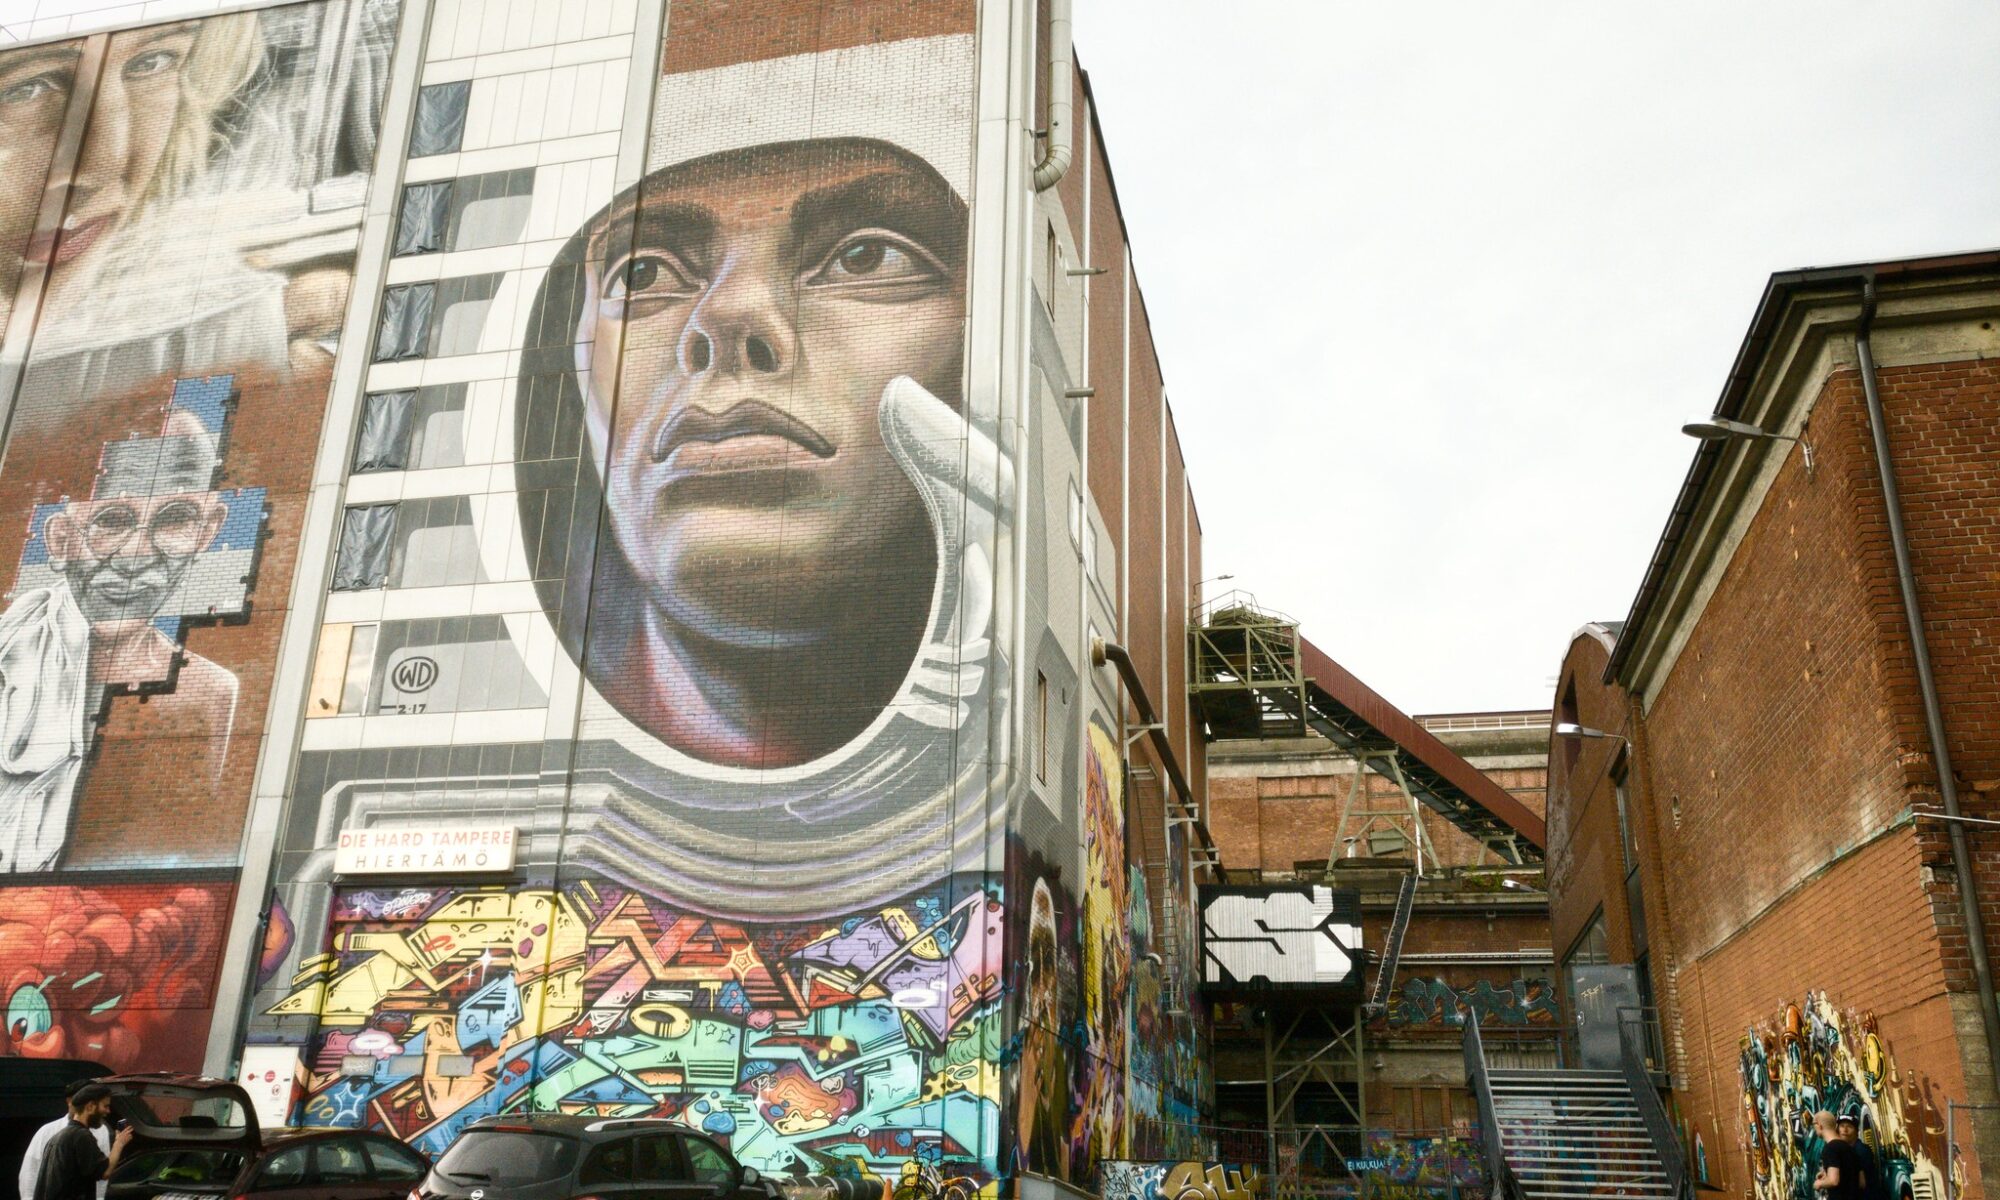 Punatiilisiä tehdasrakennuksia, joihin on maalattu abstrakteja ja esittäviä graffitikuvia.